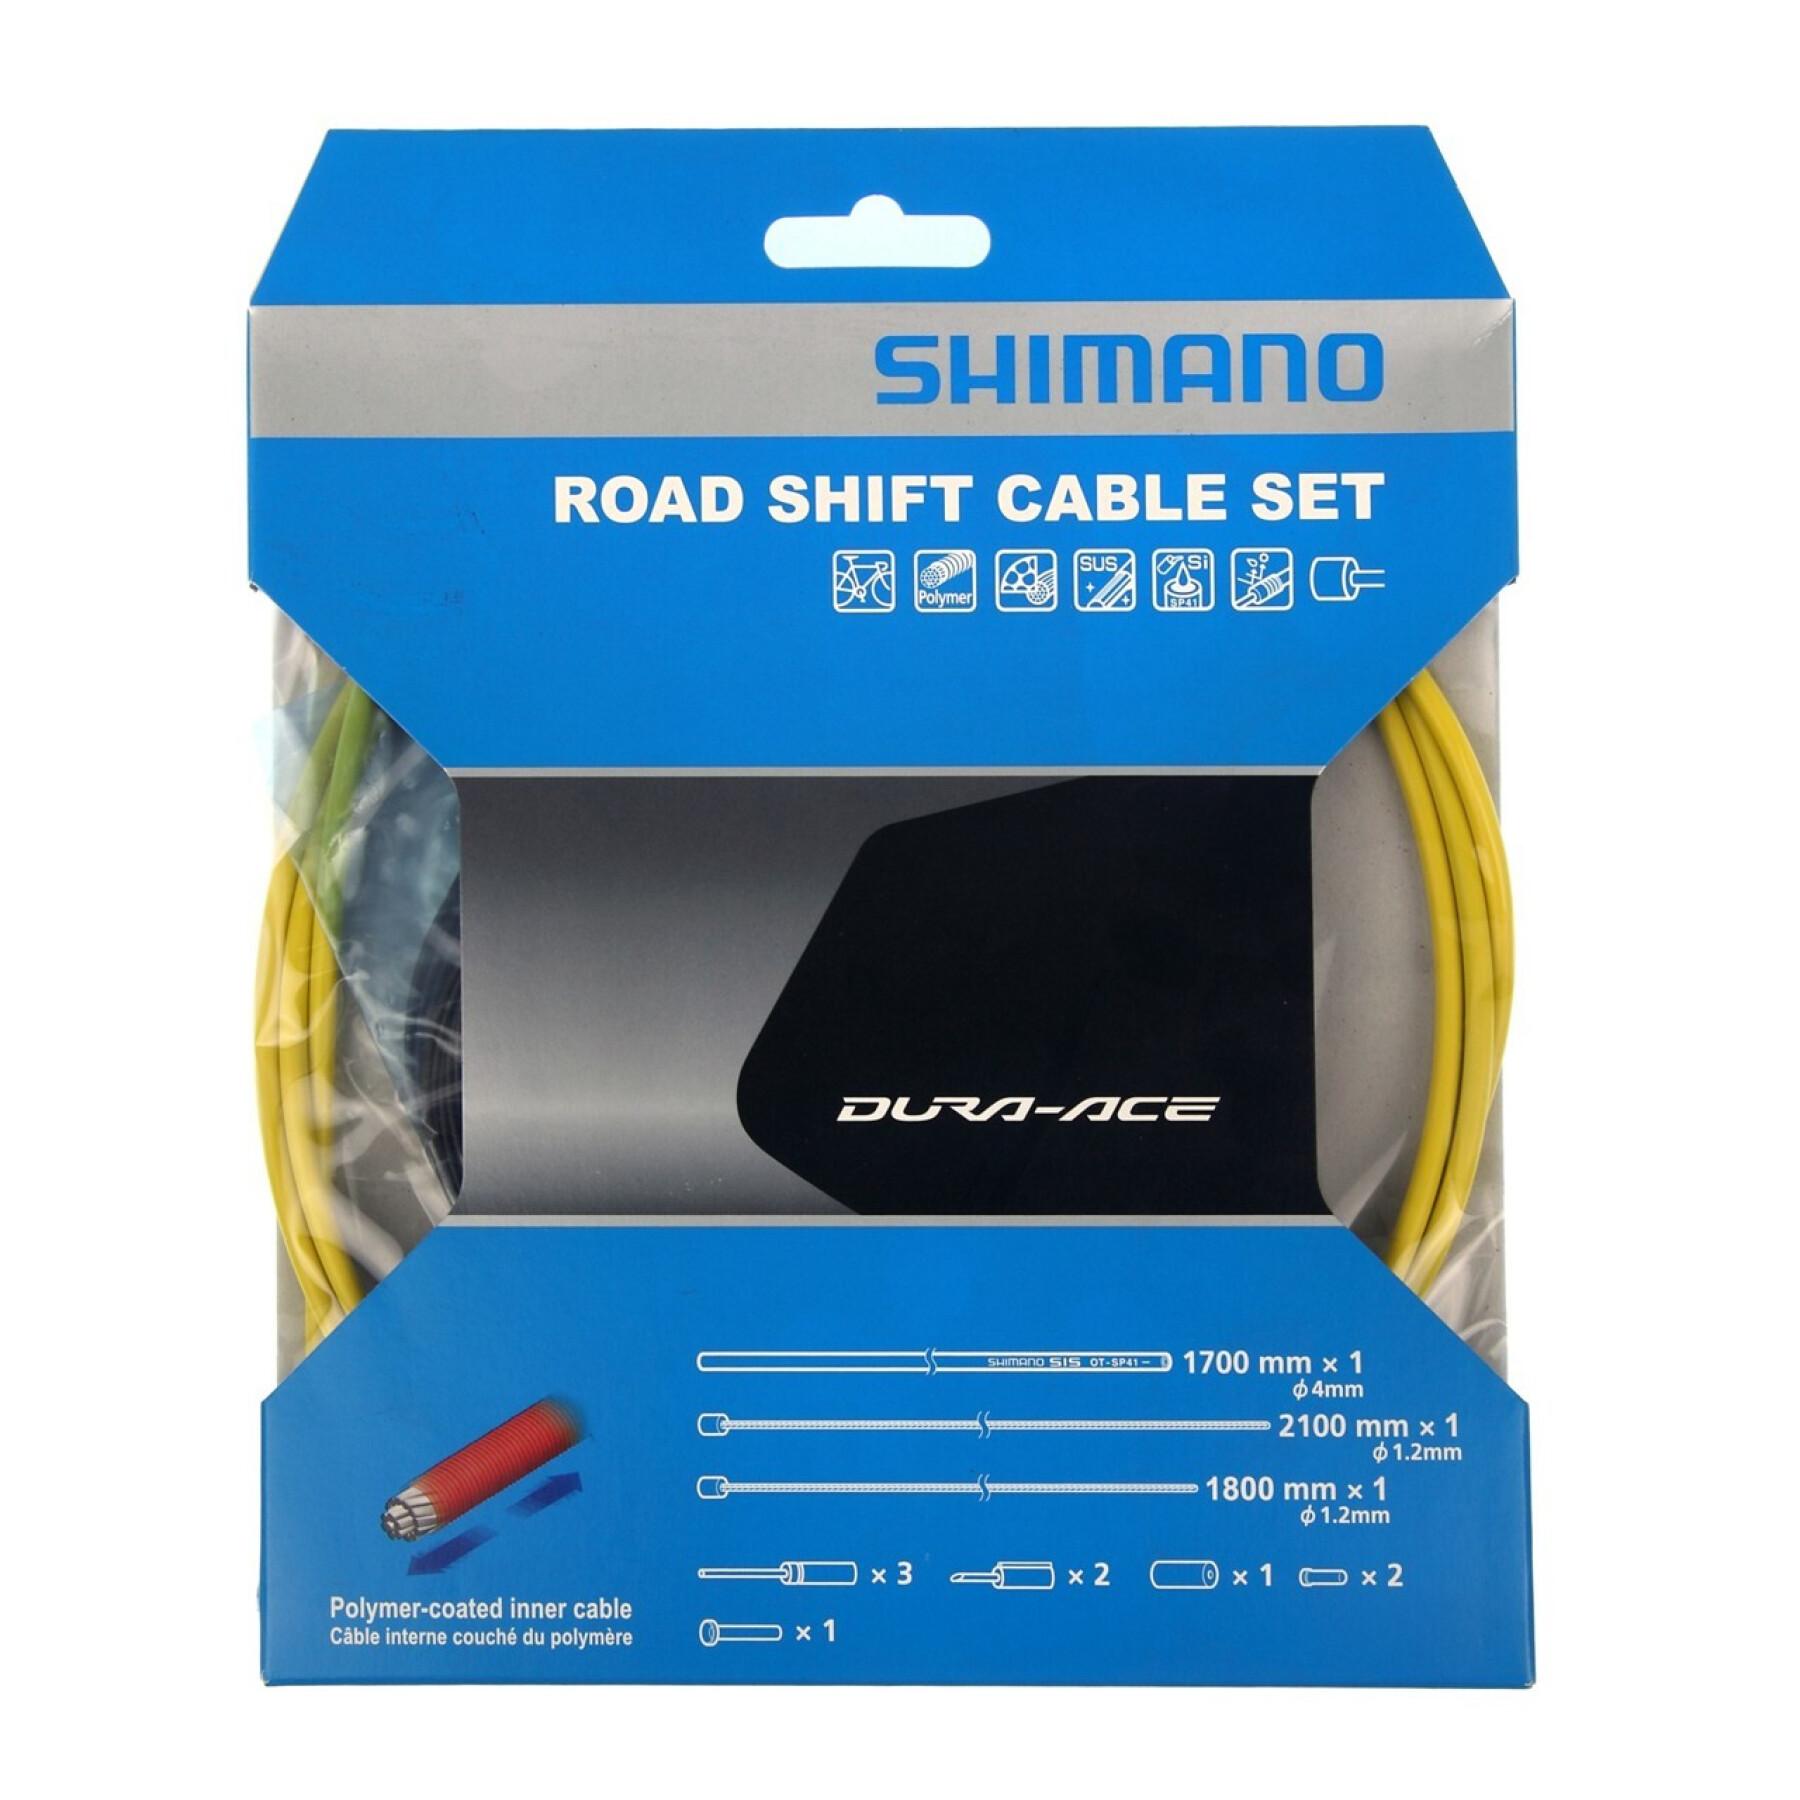 Cabos revestidos com polímero e coberturas de mudança de velocidades Shimano OT-SP41